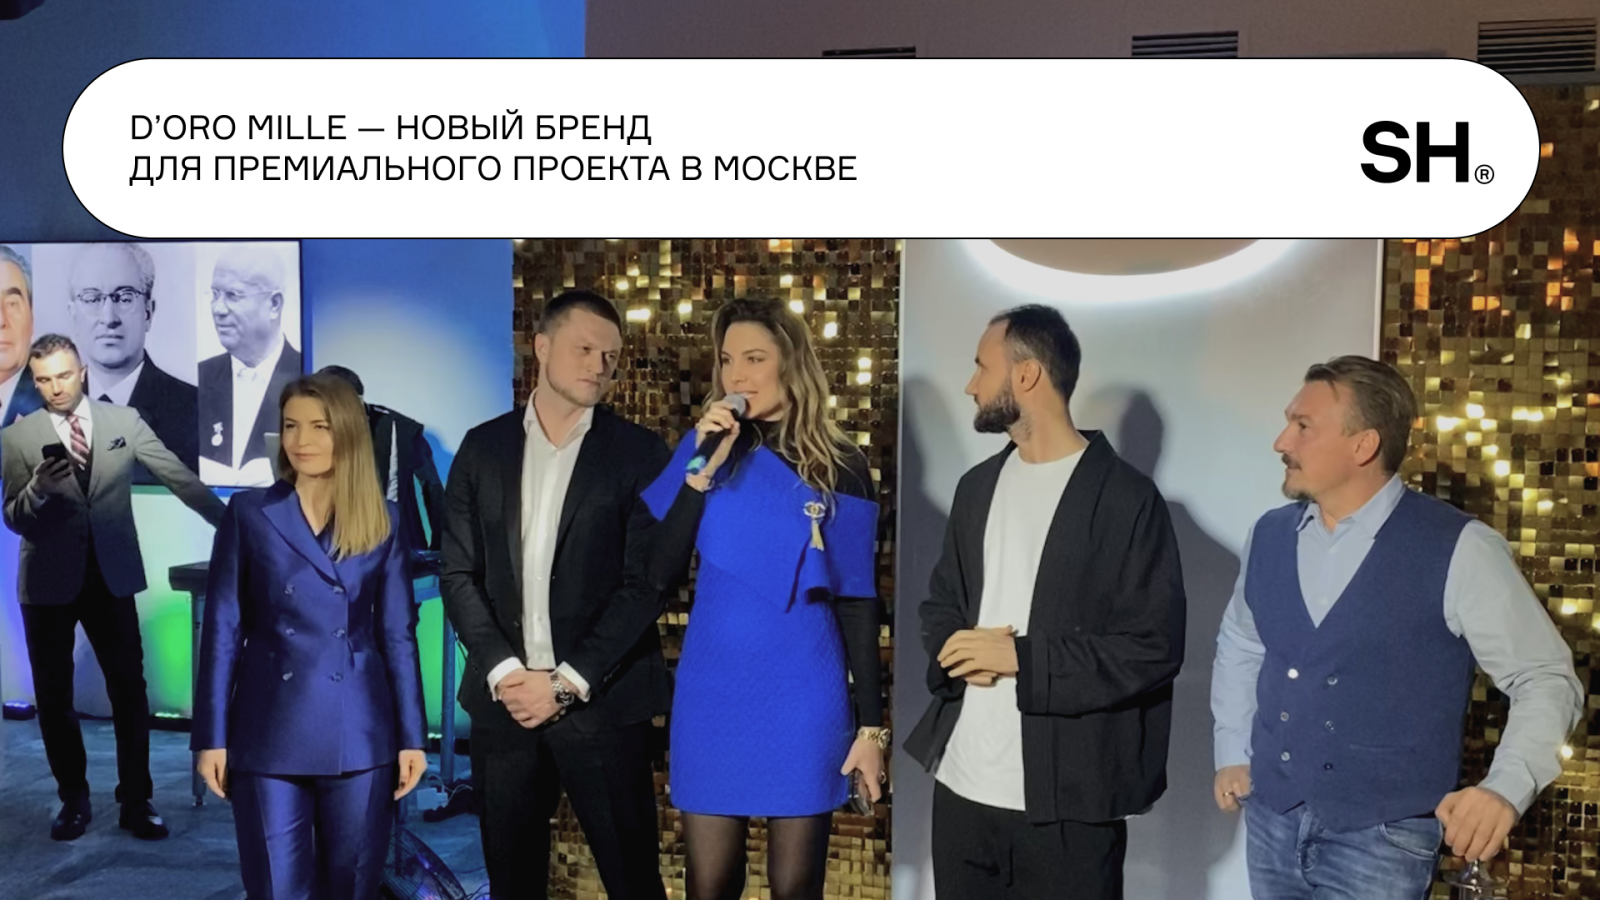 D’oro Mille — новый бренд для премиального проекта в Москве